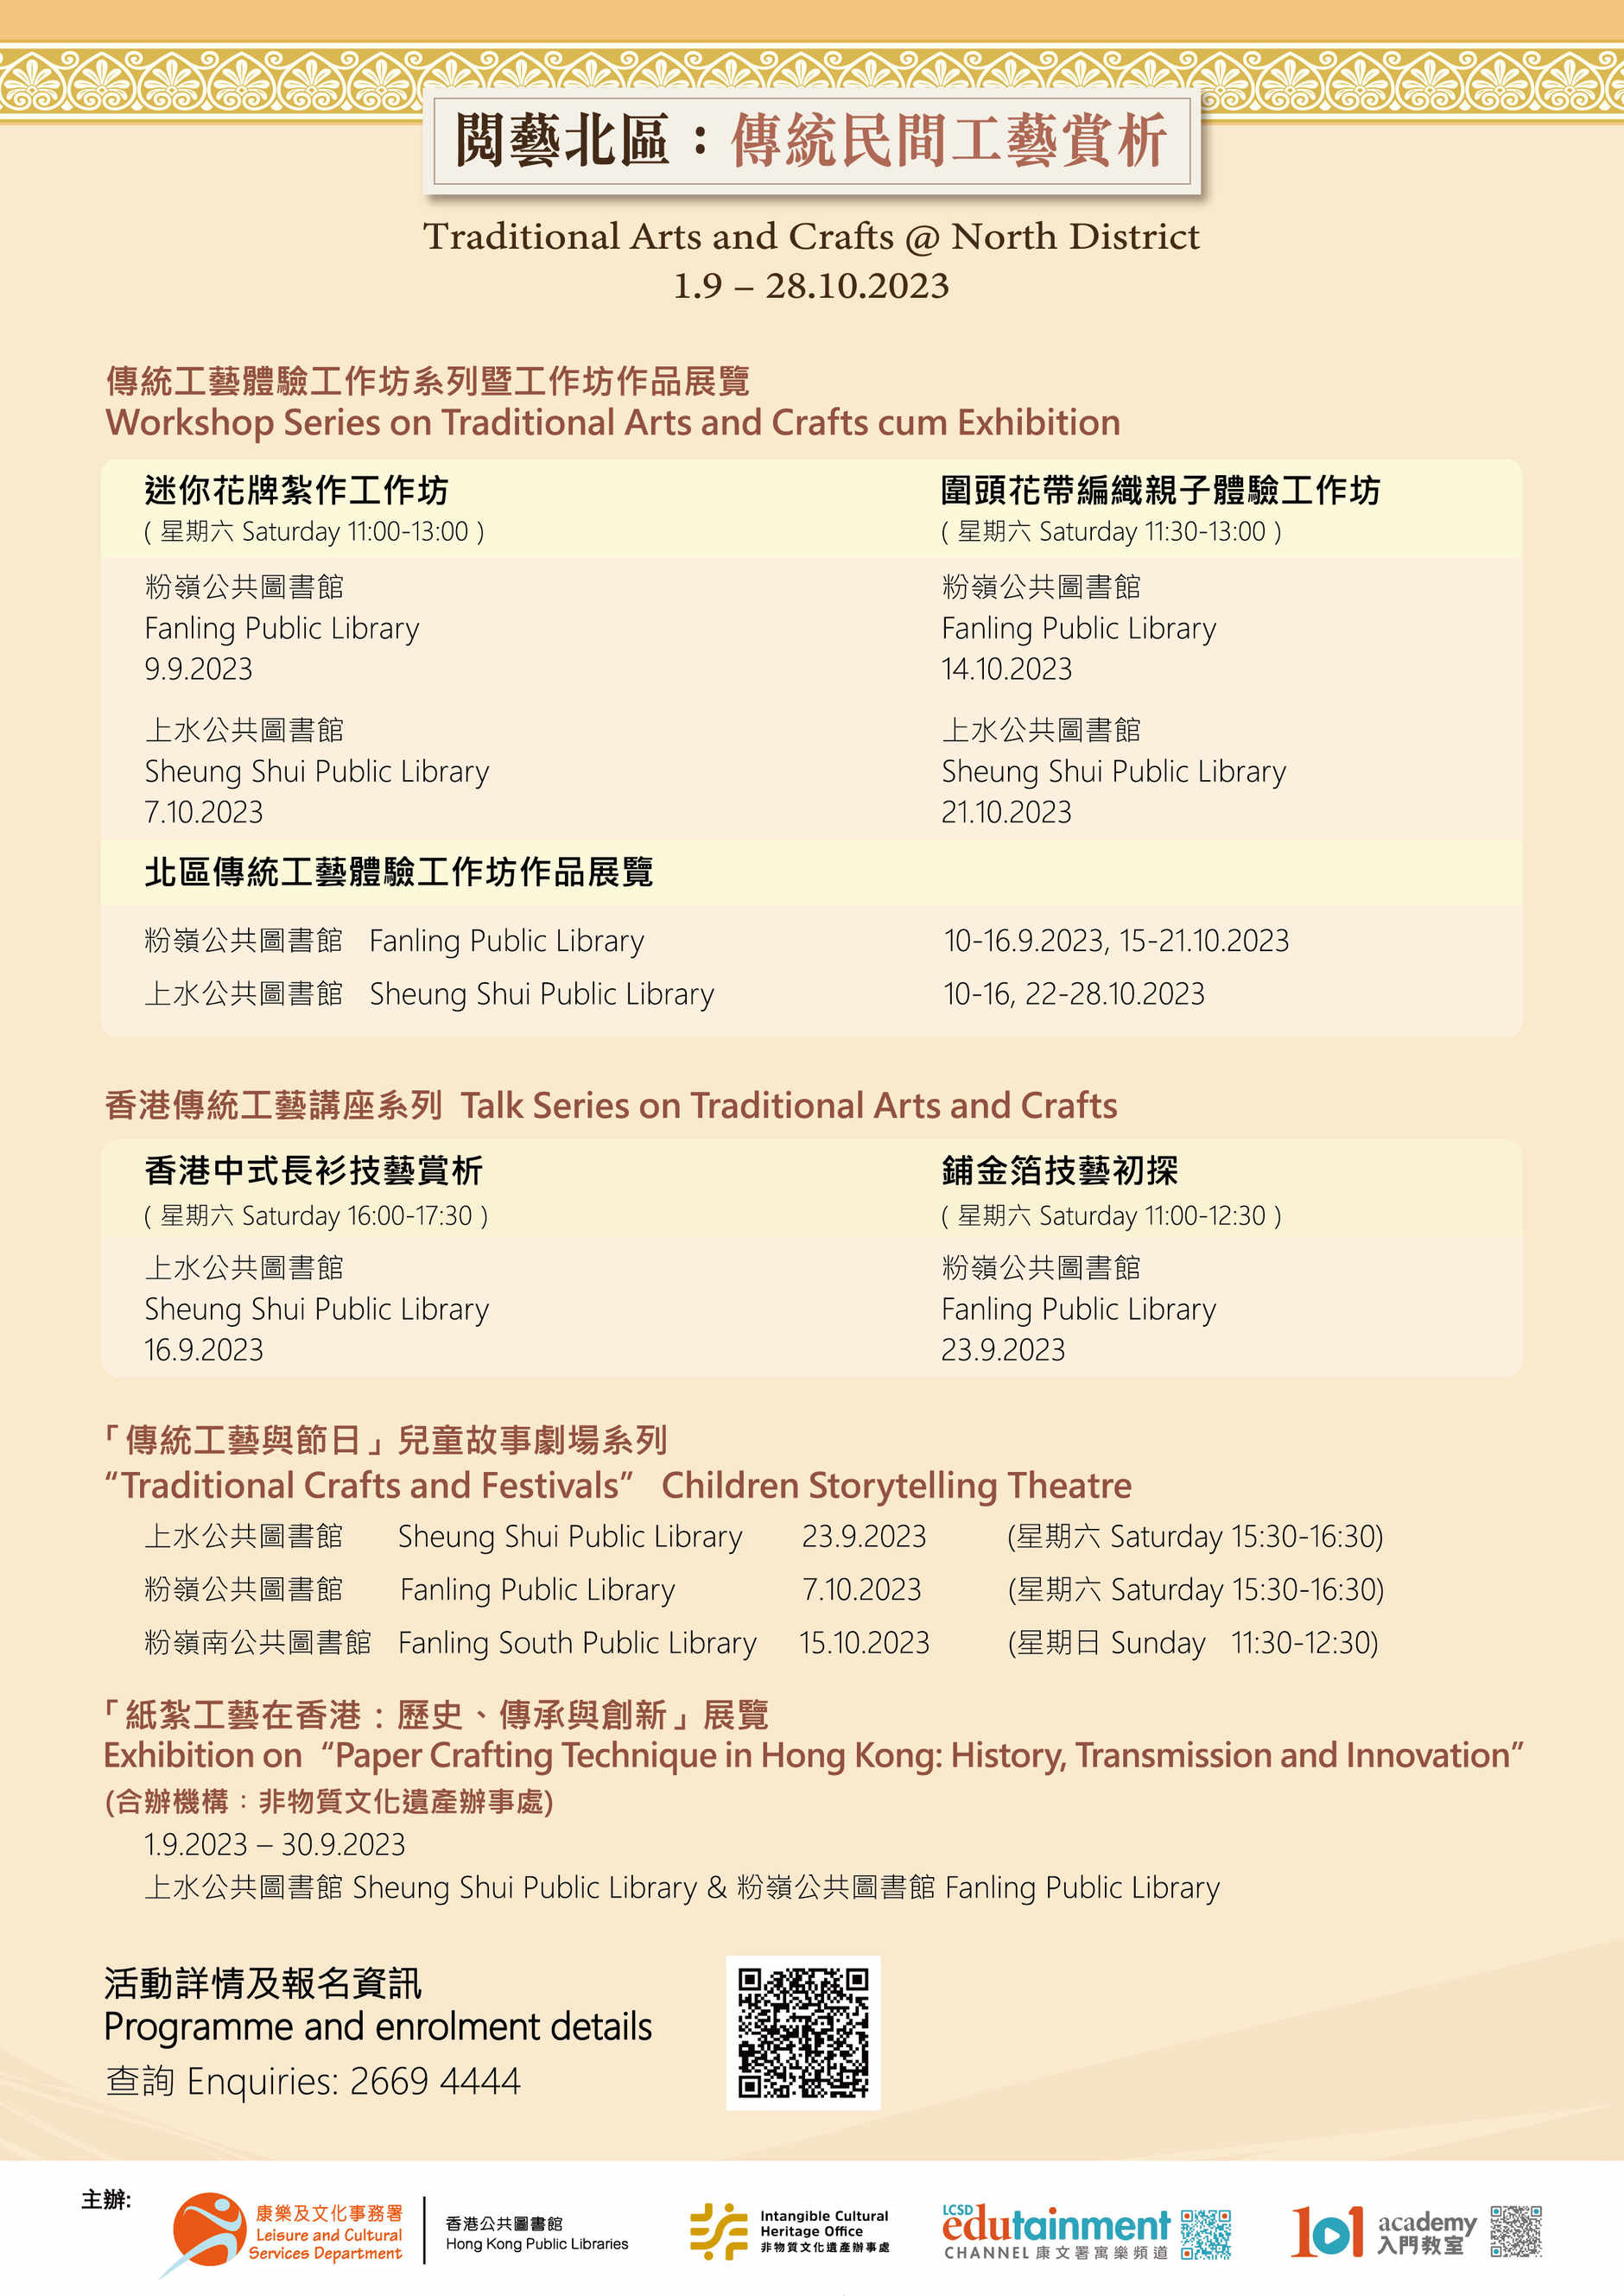 「紙紮工藝在香港：歷史、傳承與創新」展覽